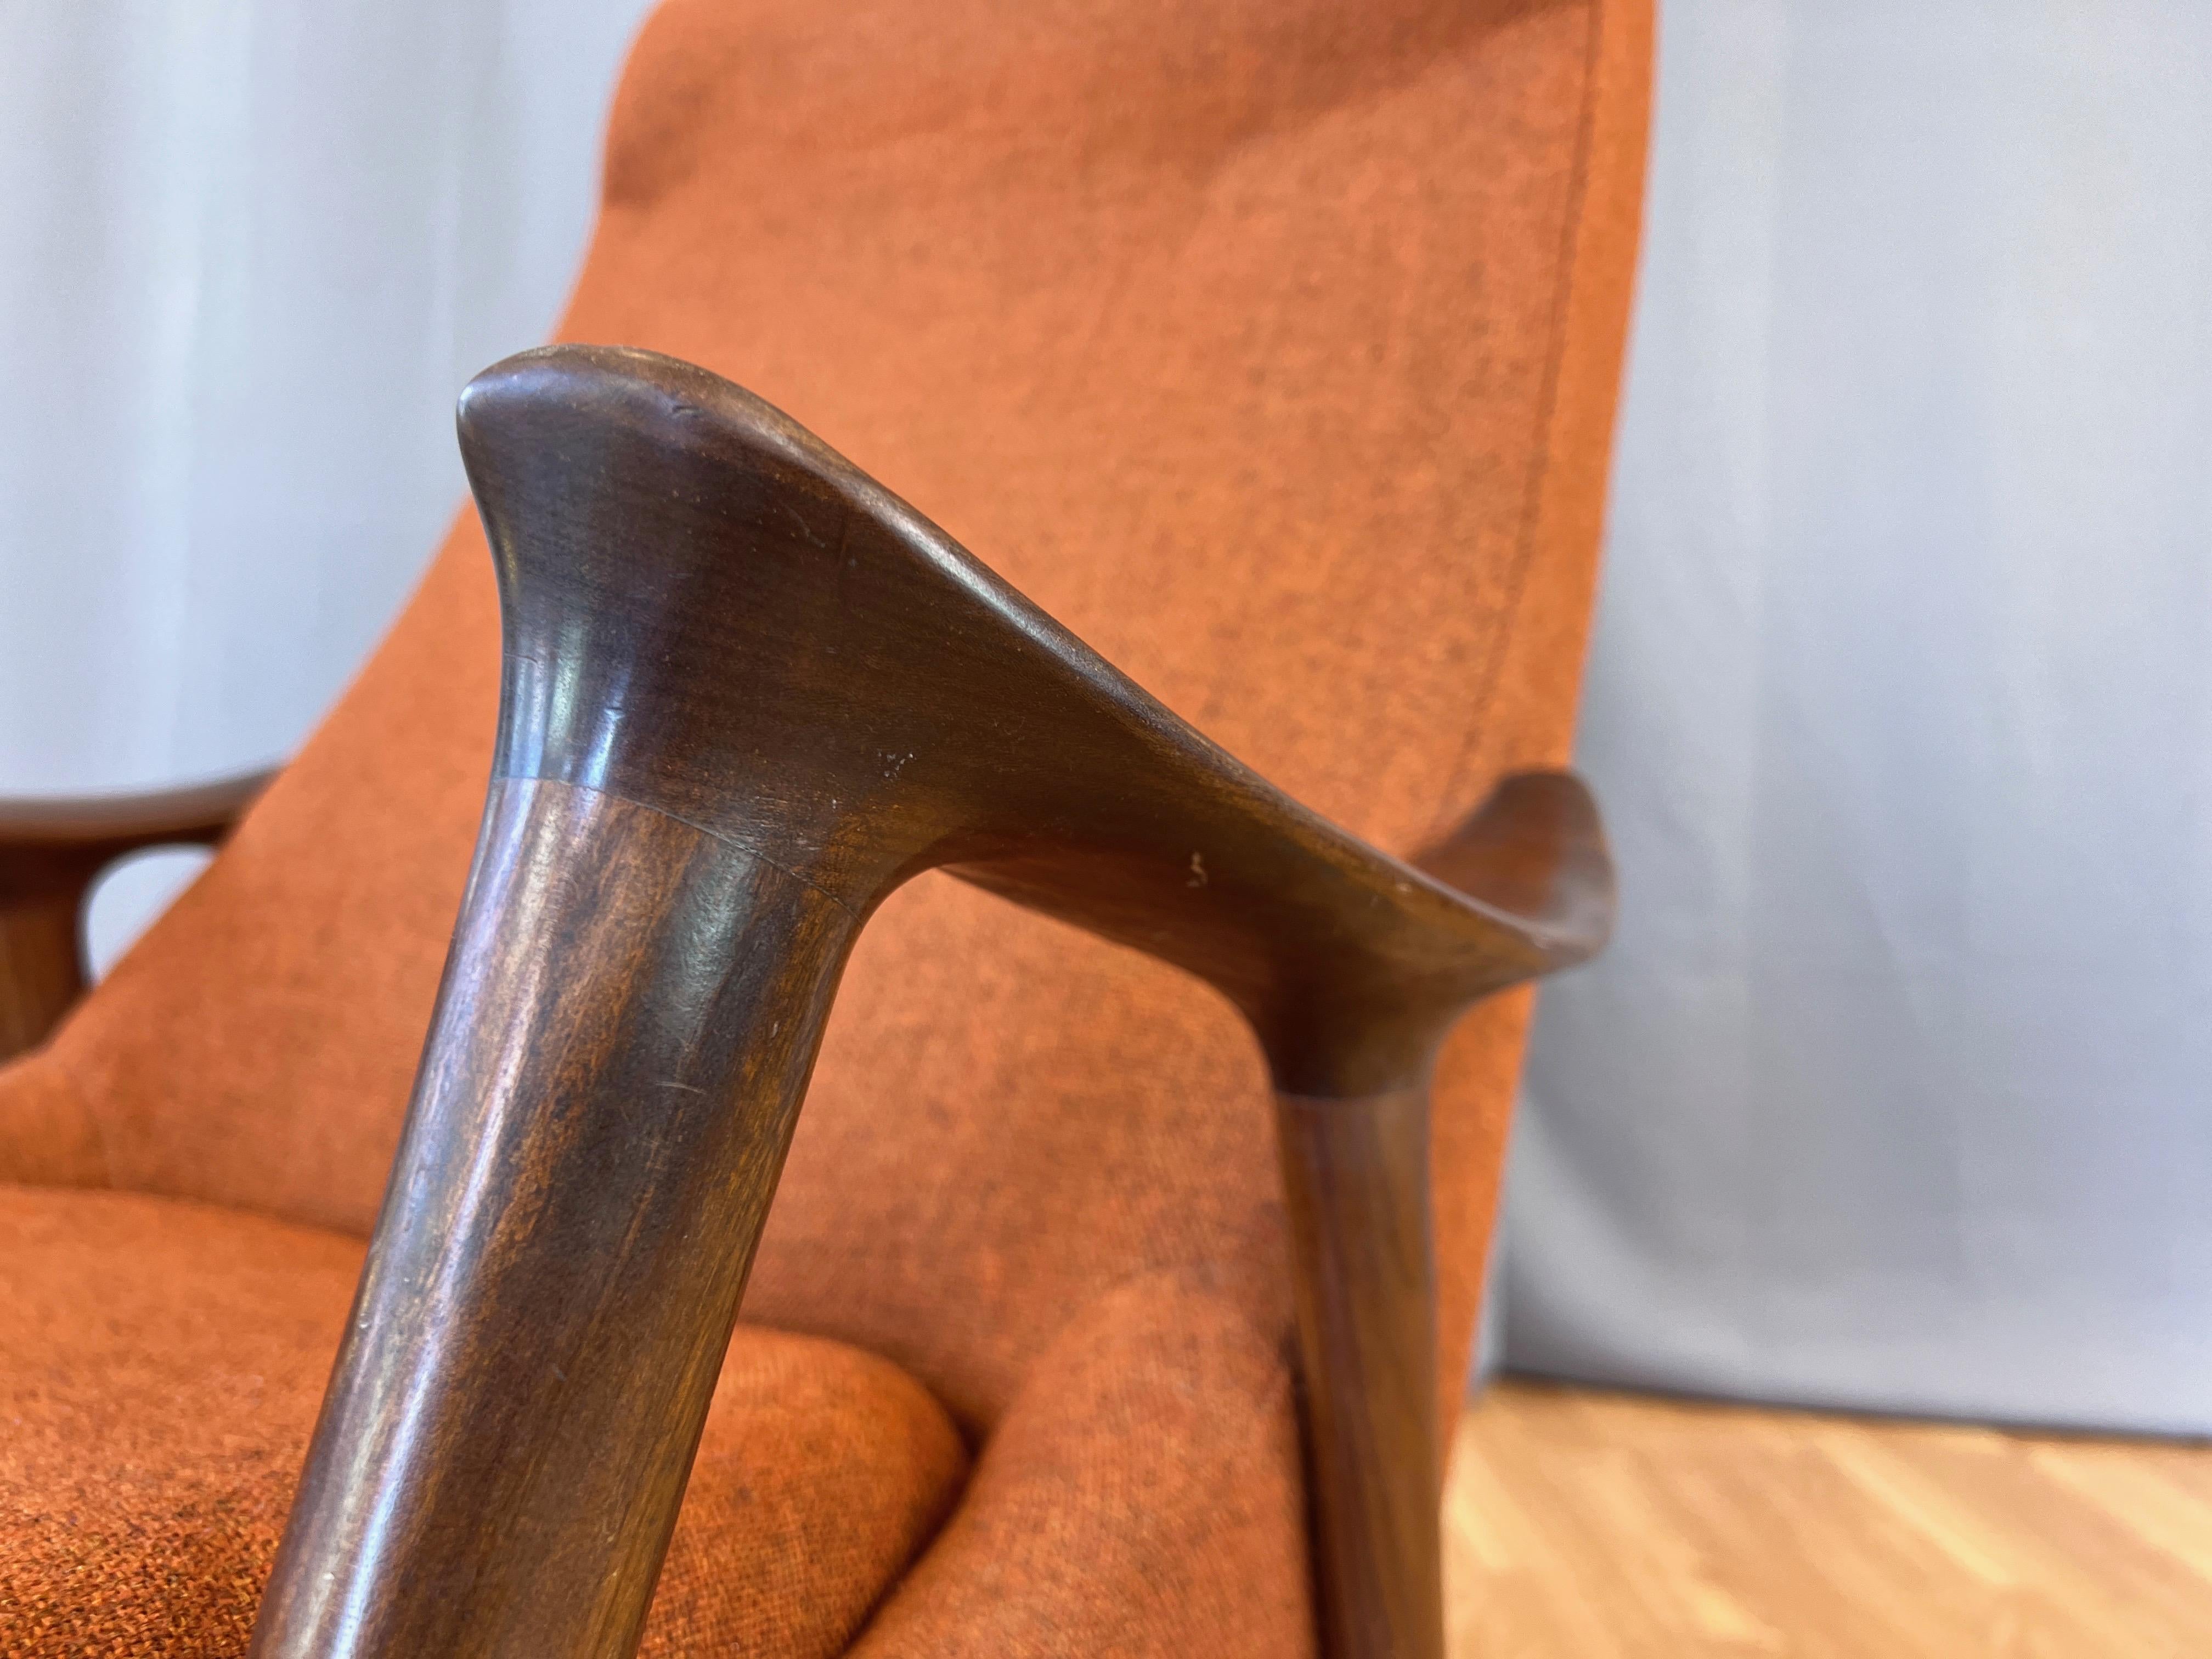 Ingmar Relling for Westnofa High-Back Sculptural Teak Rocking Chair, 1960s For Sale 4